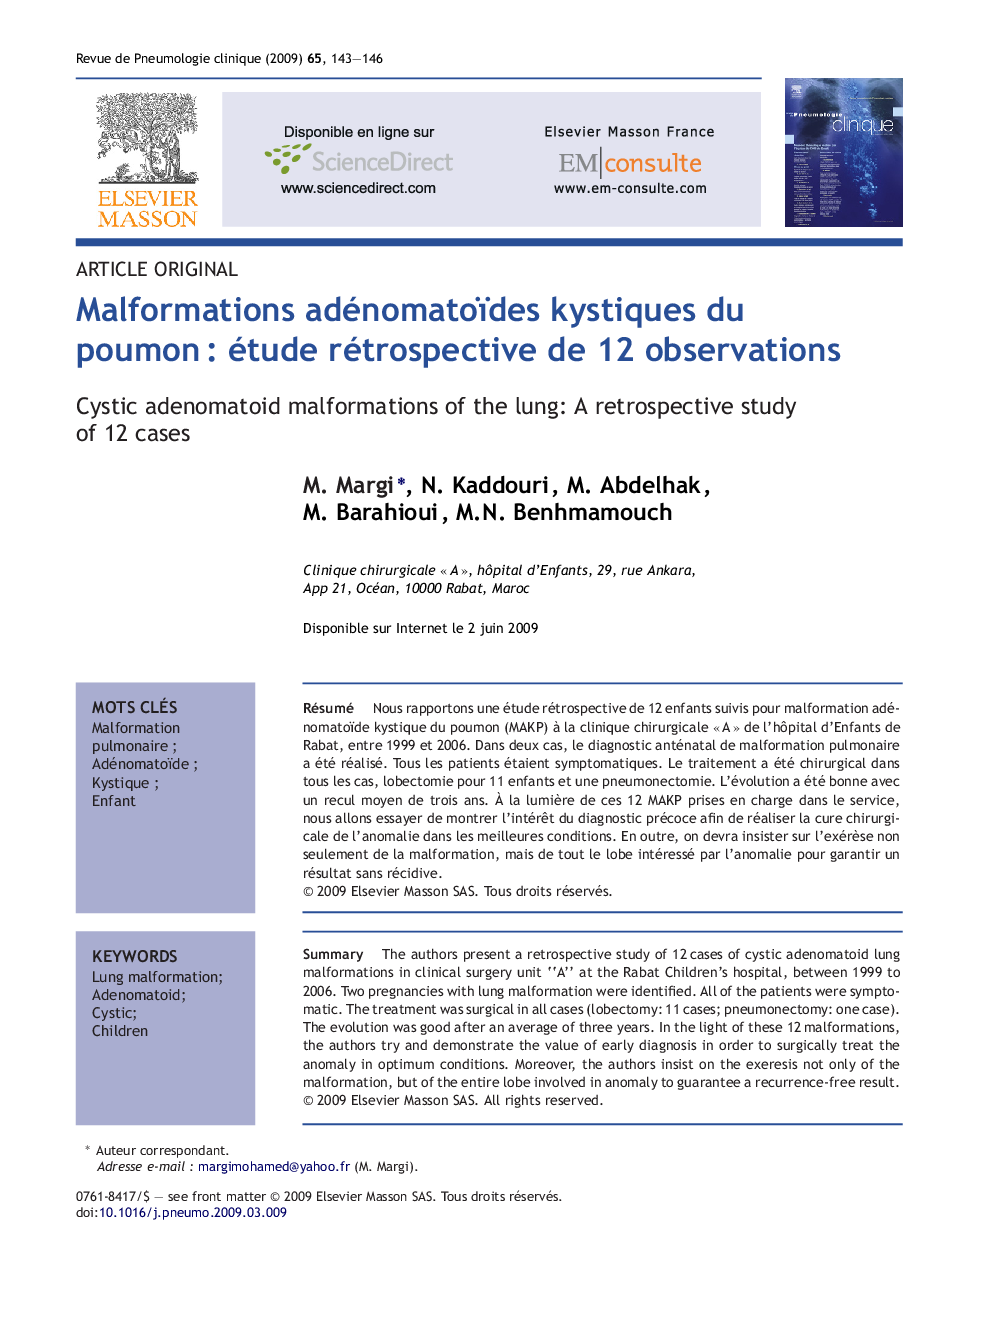 Malformations adénomatoïdes kystiques du poumonÂ : étude rétrospective de 12 observations